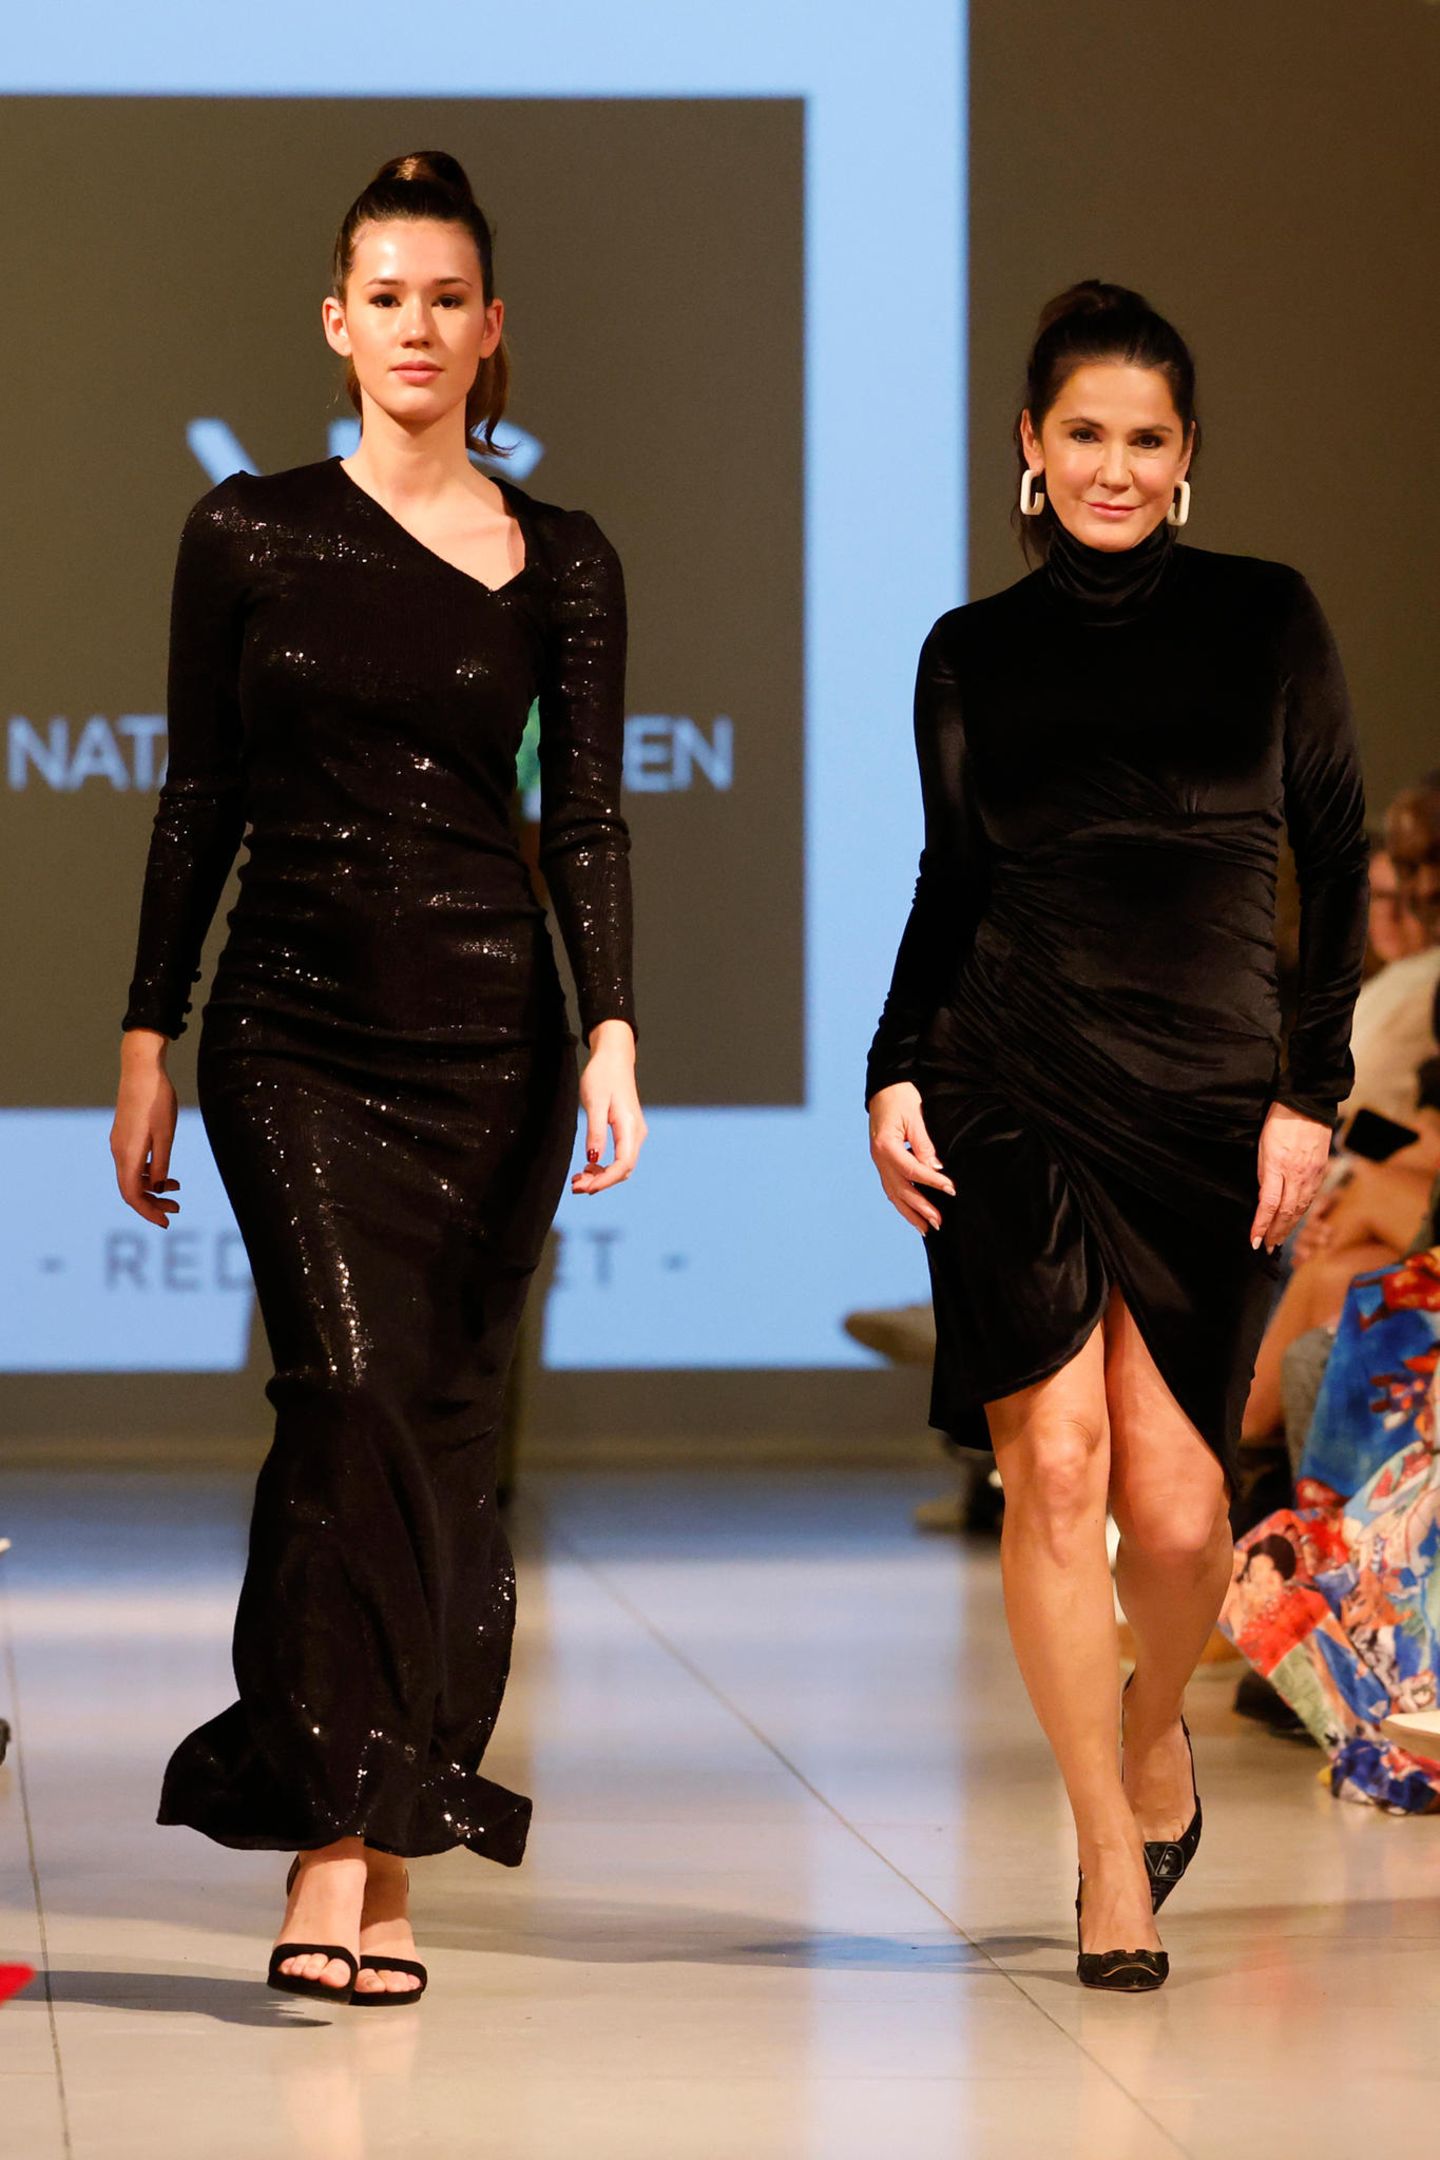 Gemeinsam mit ihrer Tochter Isabella läuft Mariella Ahrens über den Catwalk von Natascha Gruen. Beide in sehr eleganten, schwarzen Kleidern.